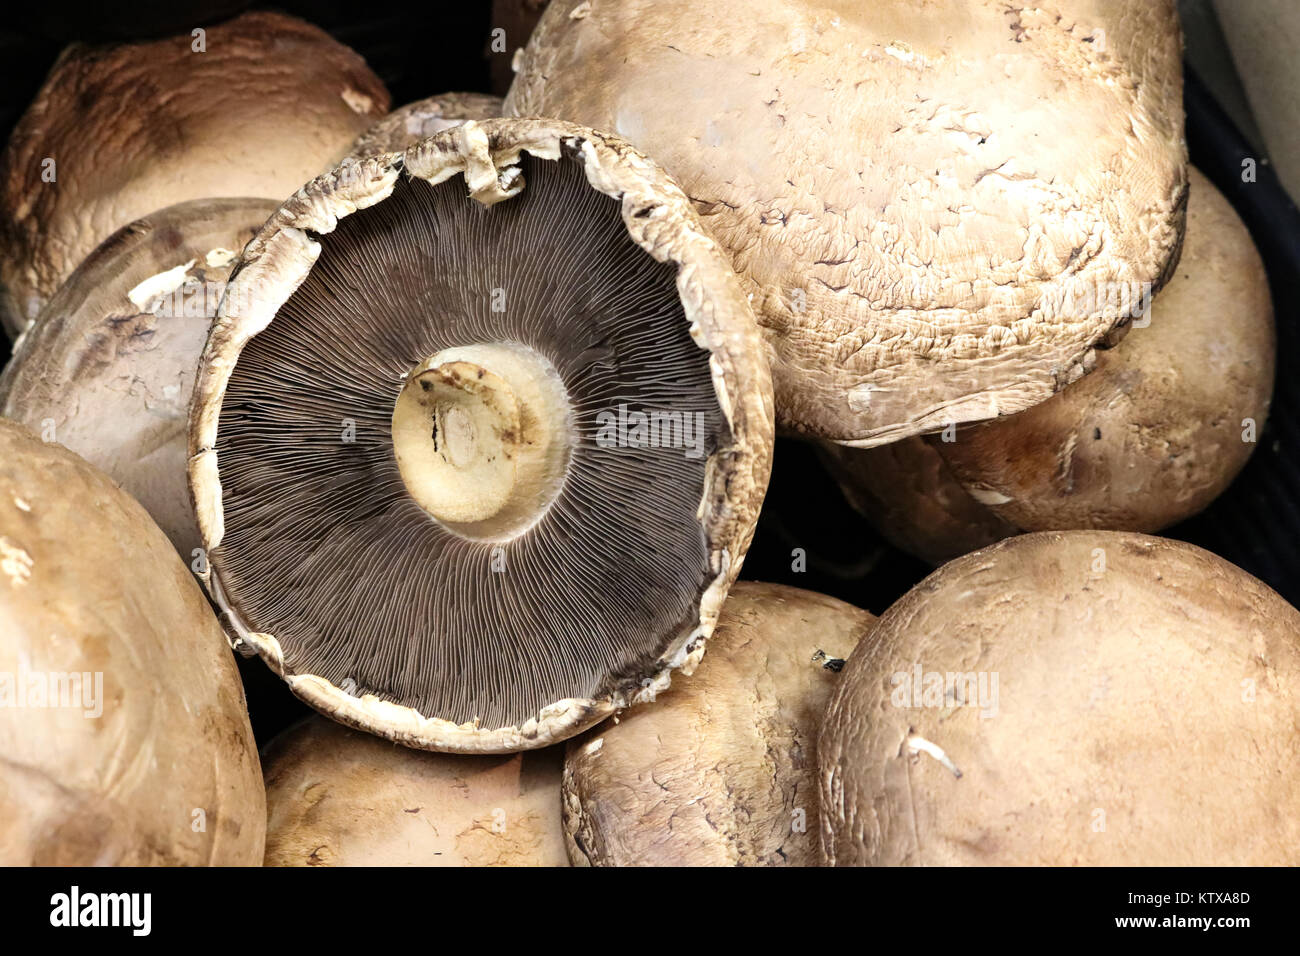 Closeup Detail der kleinen Portobello Pilze Kappen vor einem schwarzen Hintergrund.jpg Stockfoto